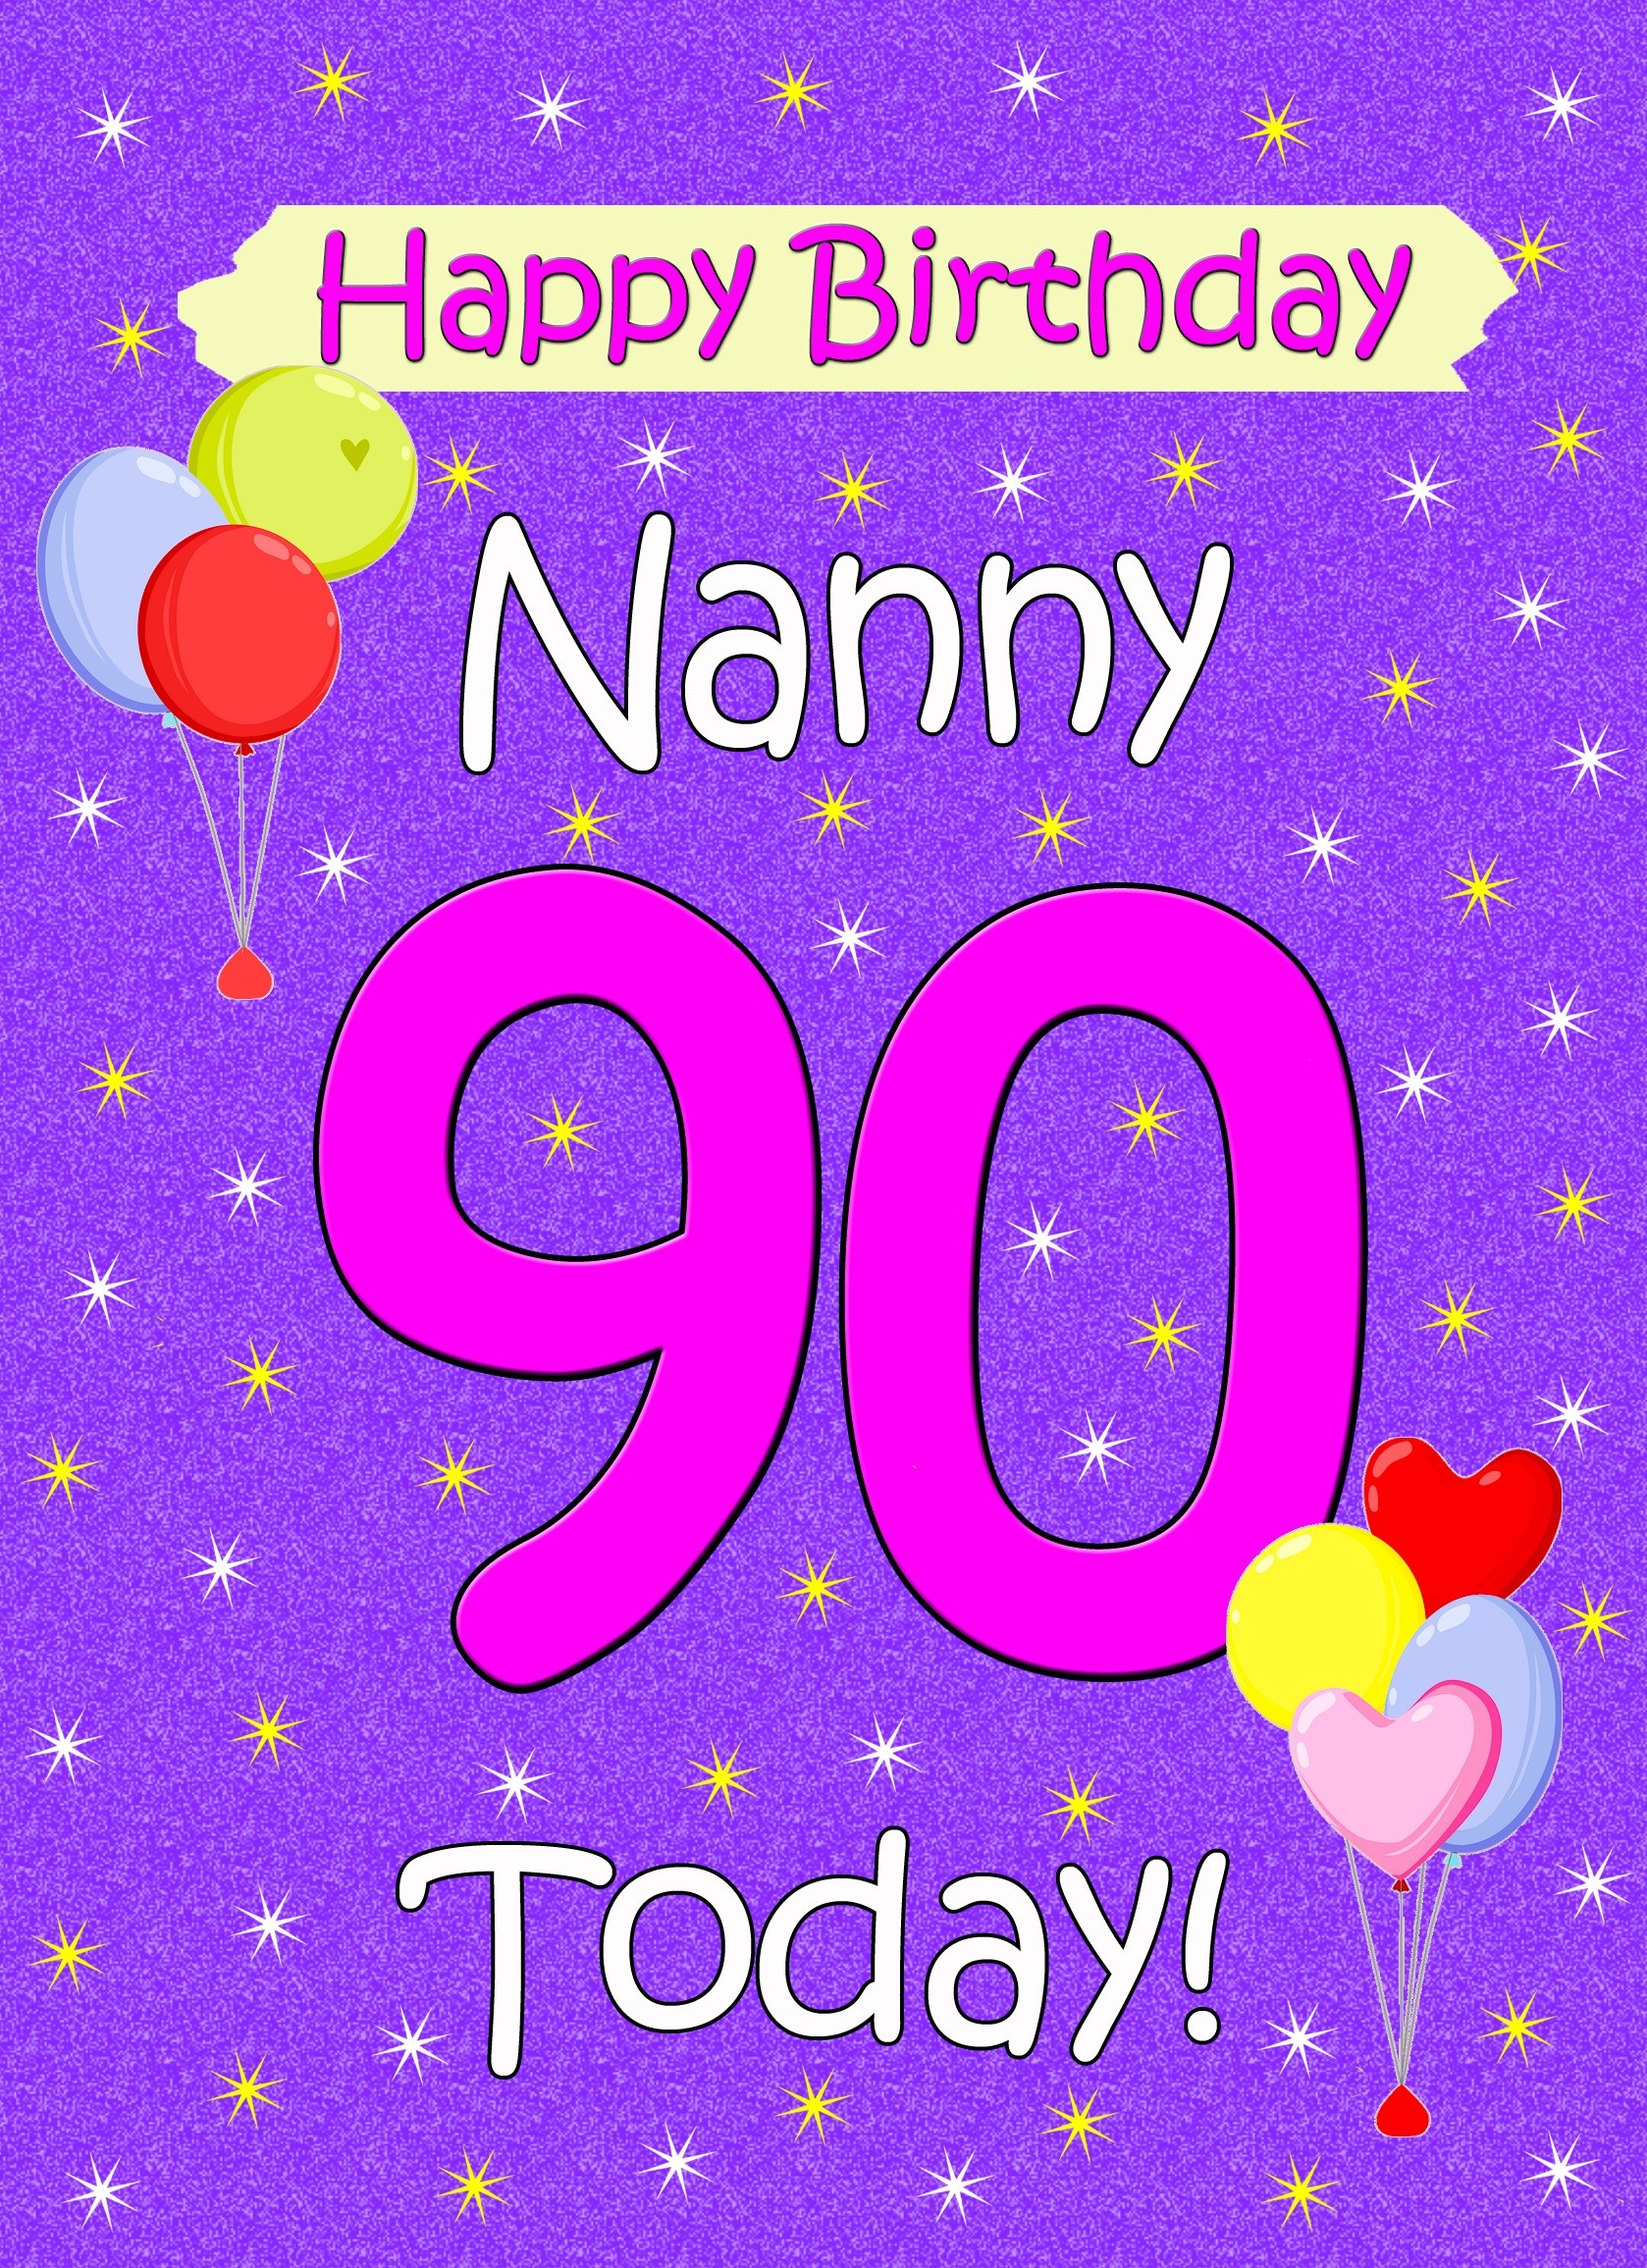 Nanny 90th Birthday Card (Lilac)